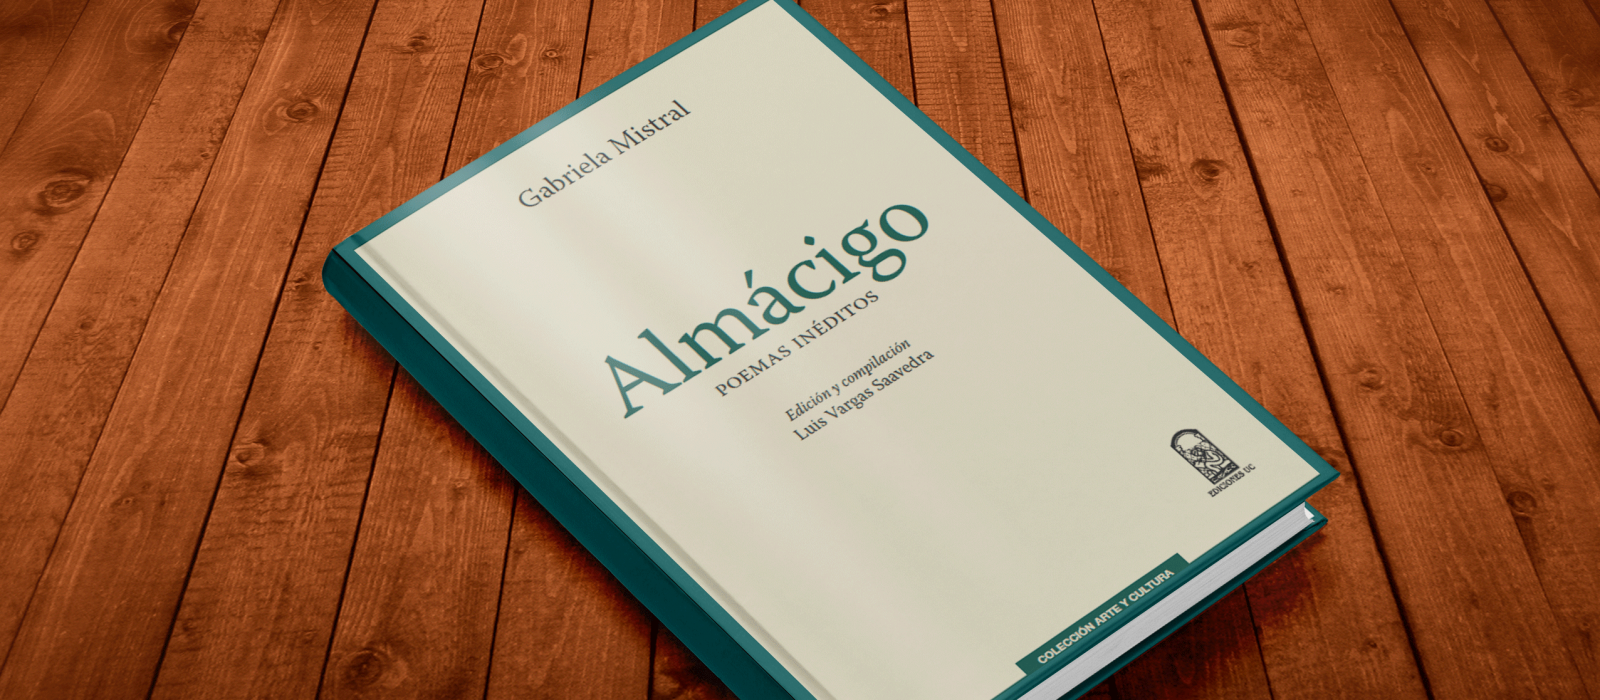 [Concurso cerrado] ¡Participa por los poemas inéditos de Gabriela Mistral en el libro “Almácigo”!